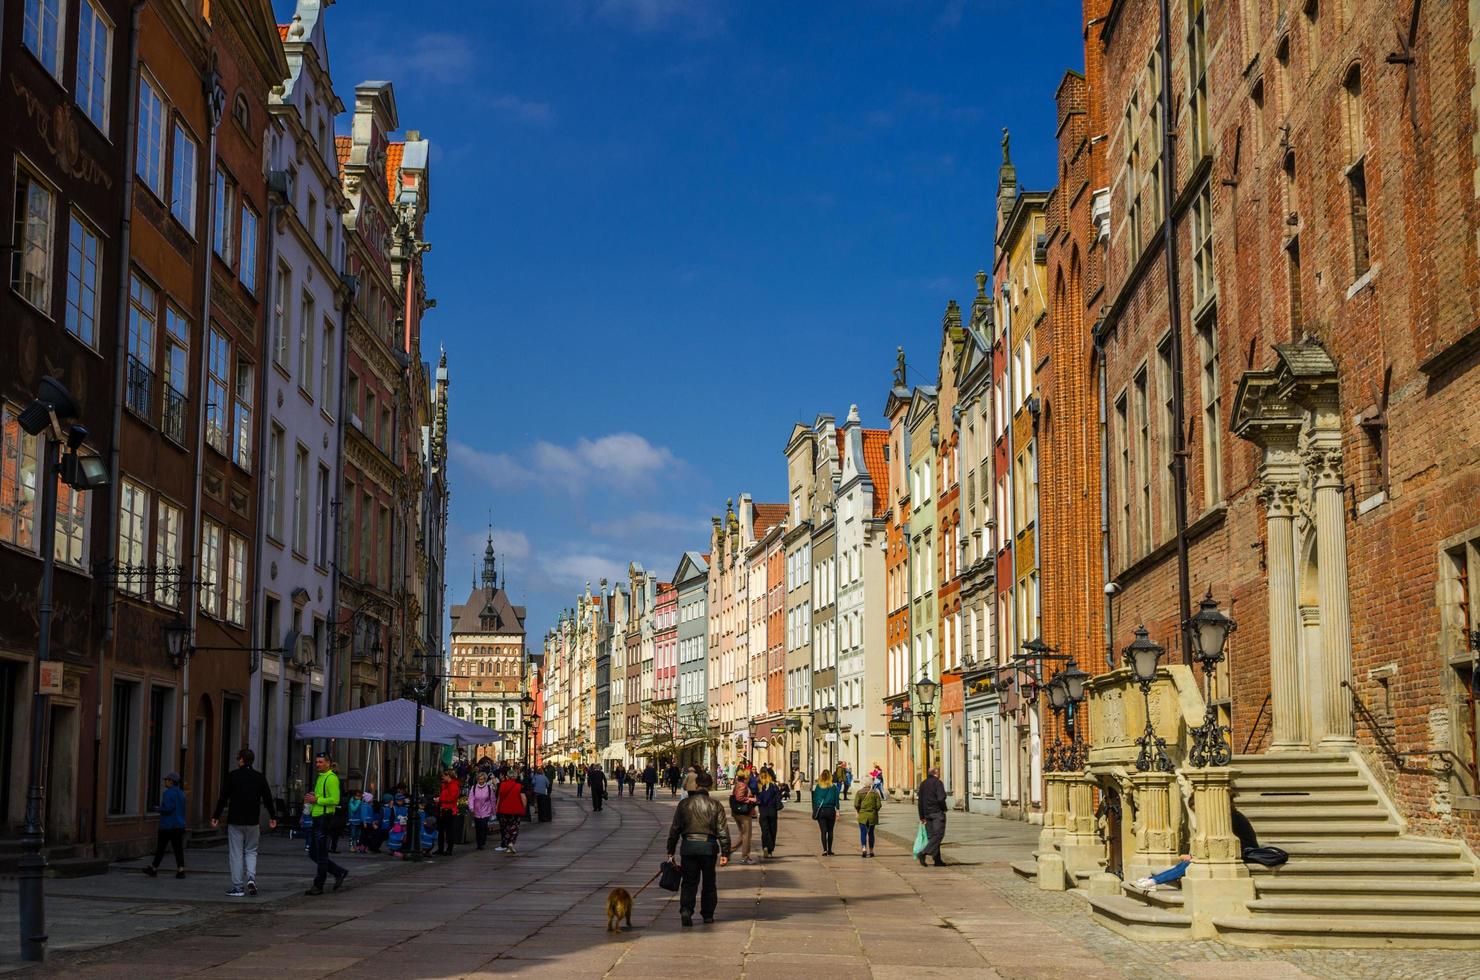 gdansk, polonia, 17 de abril de 2018 golden gate zlota brama, torre de la prisión y fachada de hermosos edificios típicos de casas coloridas y turistas caminando en la calle dluga en el antiguo centro histórico de la ciudad foto